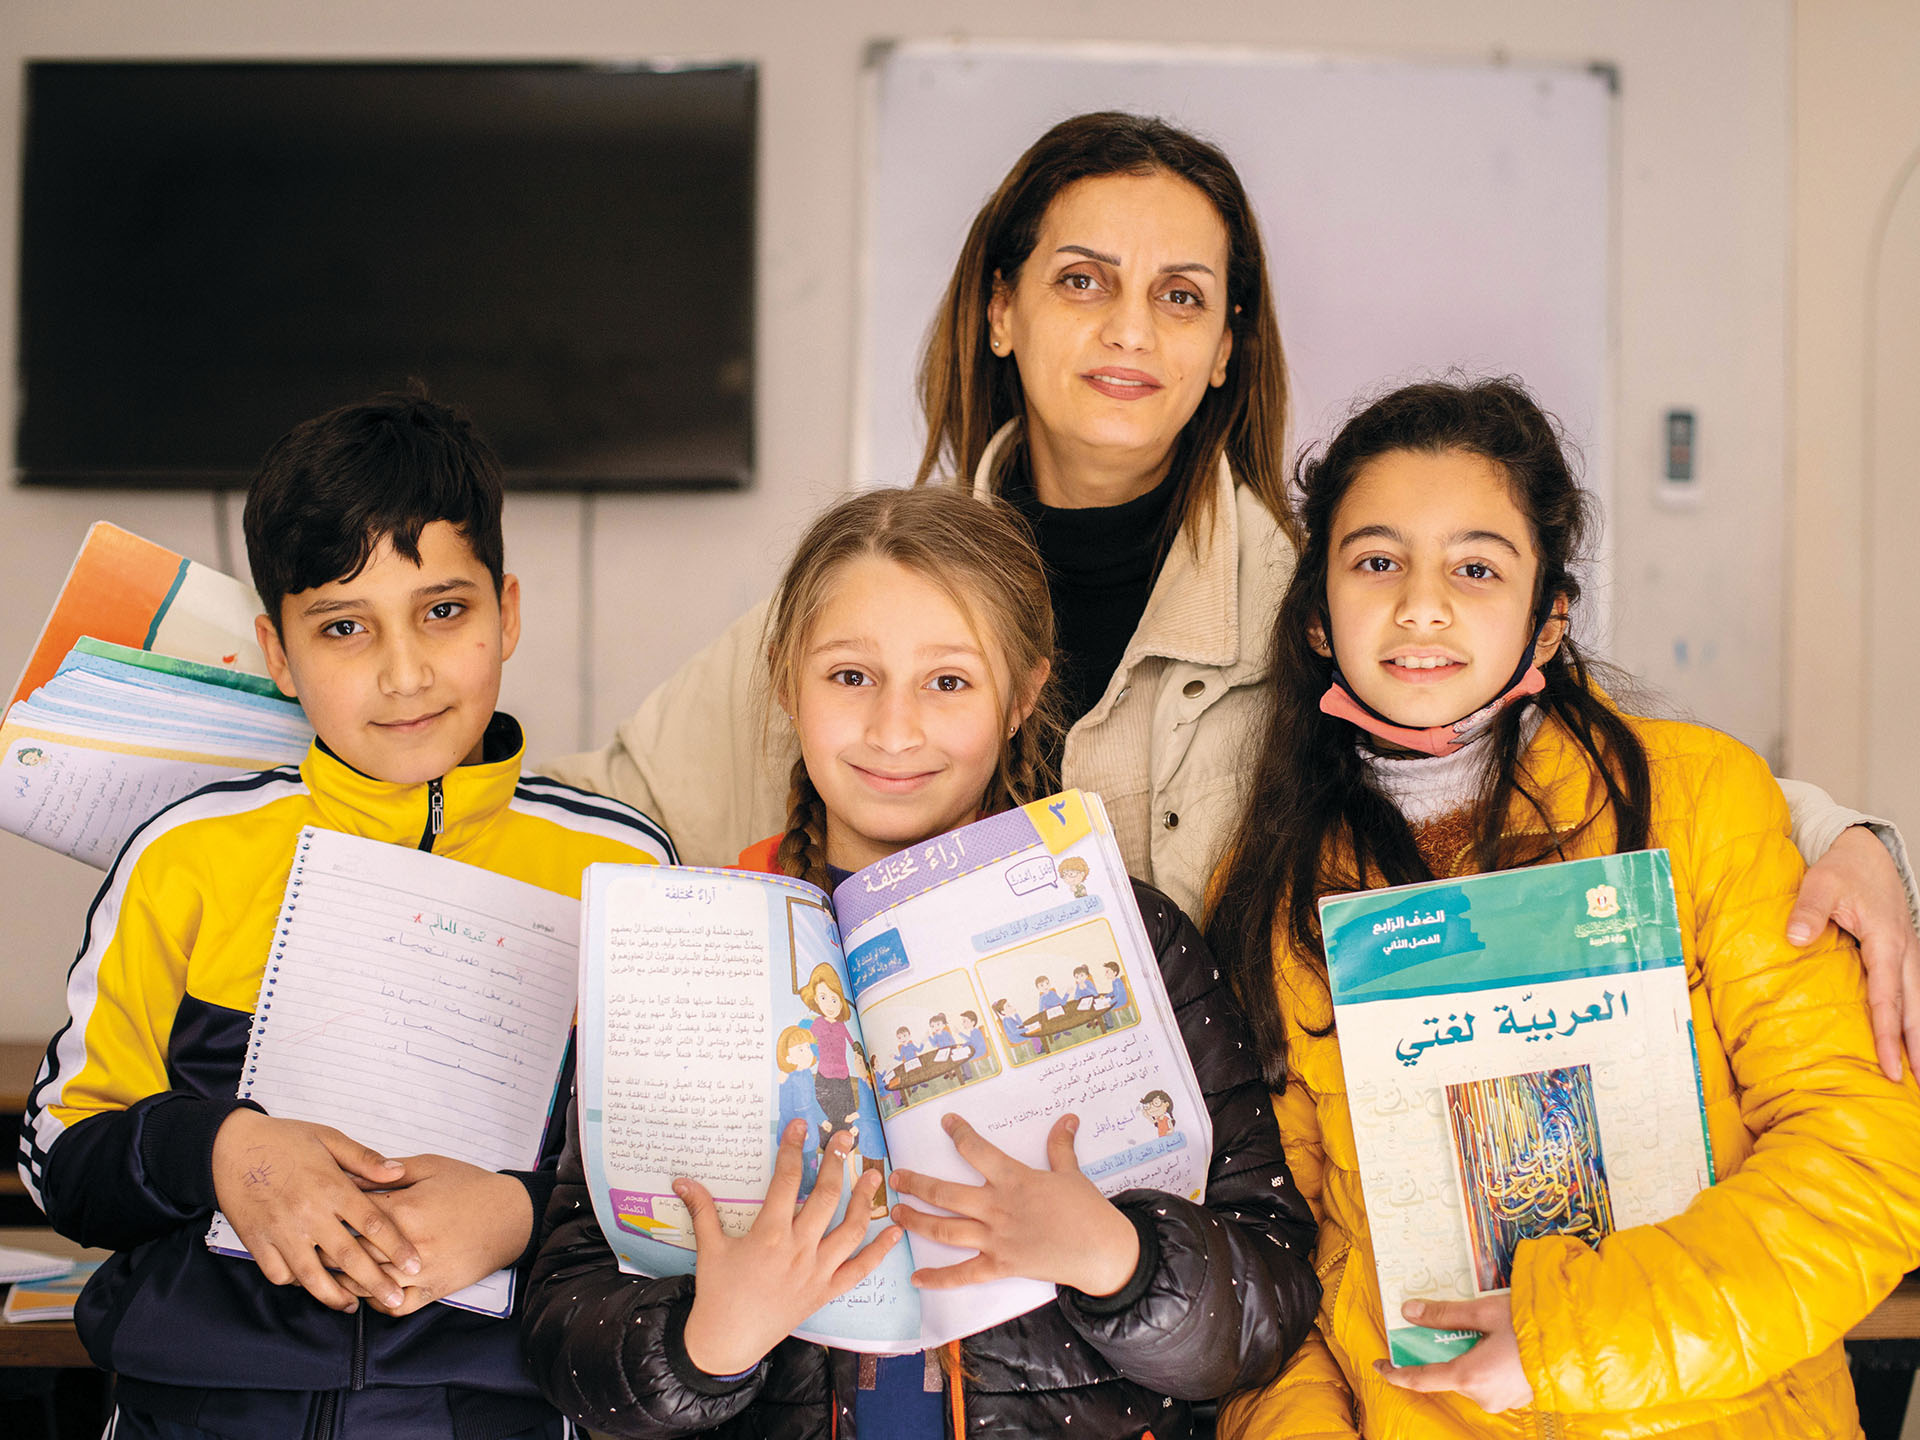 Ferial kolmen oppikirjoja pitelevän syyrialaislapsen kanssa Toivon keskuksessa